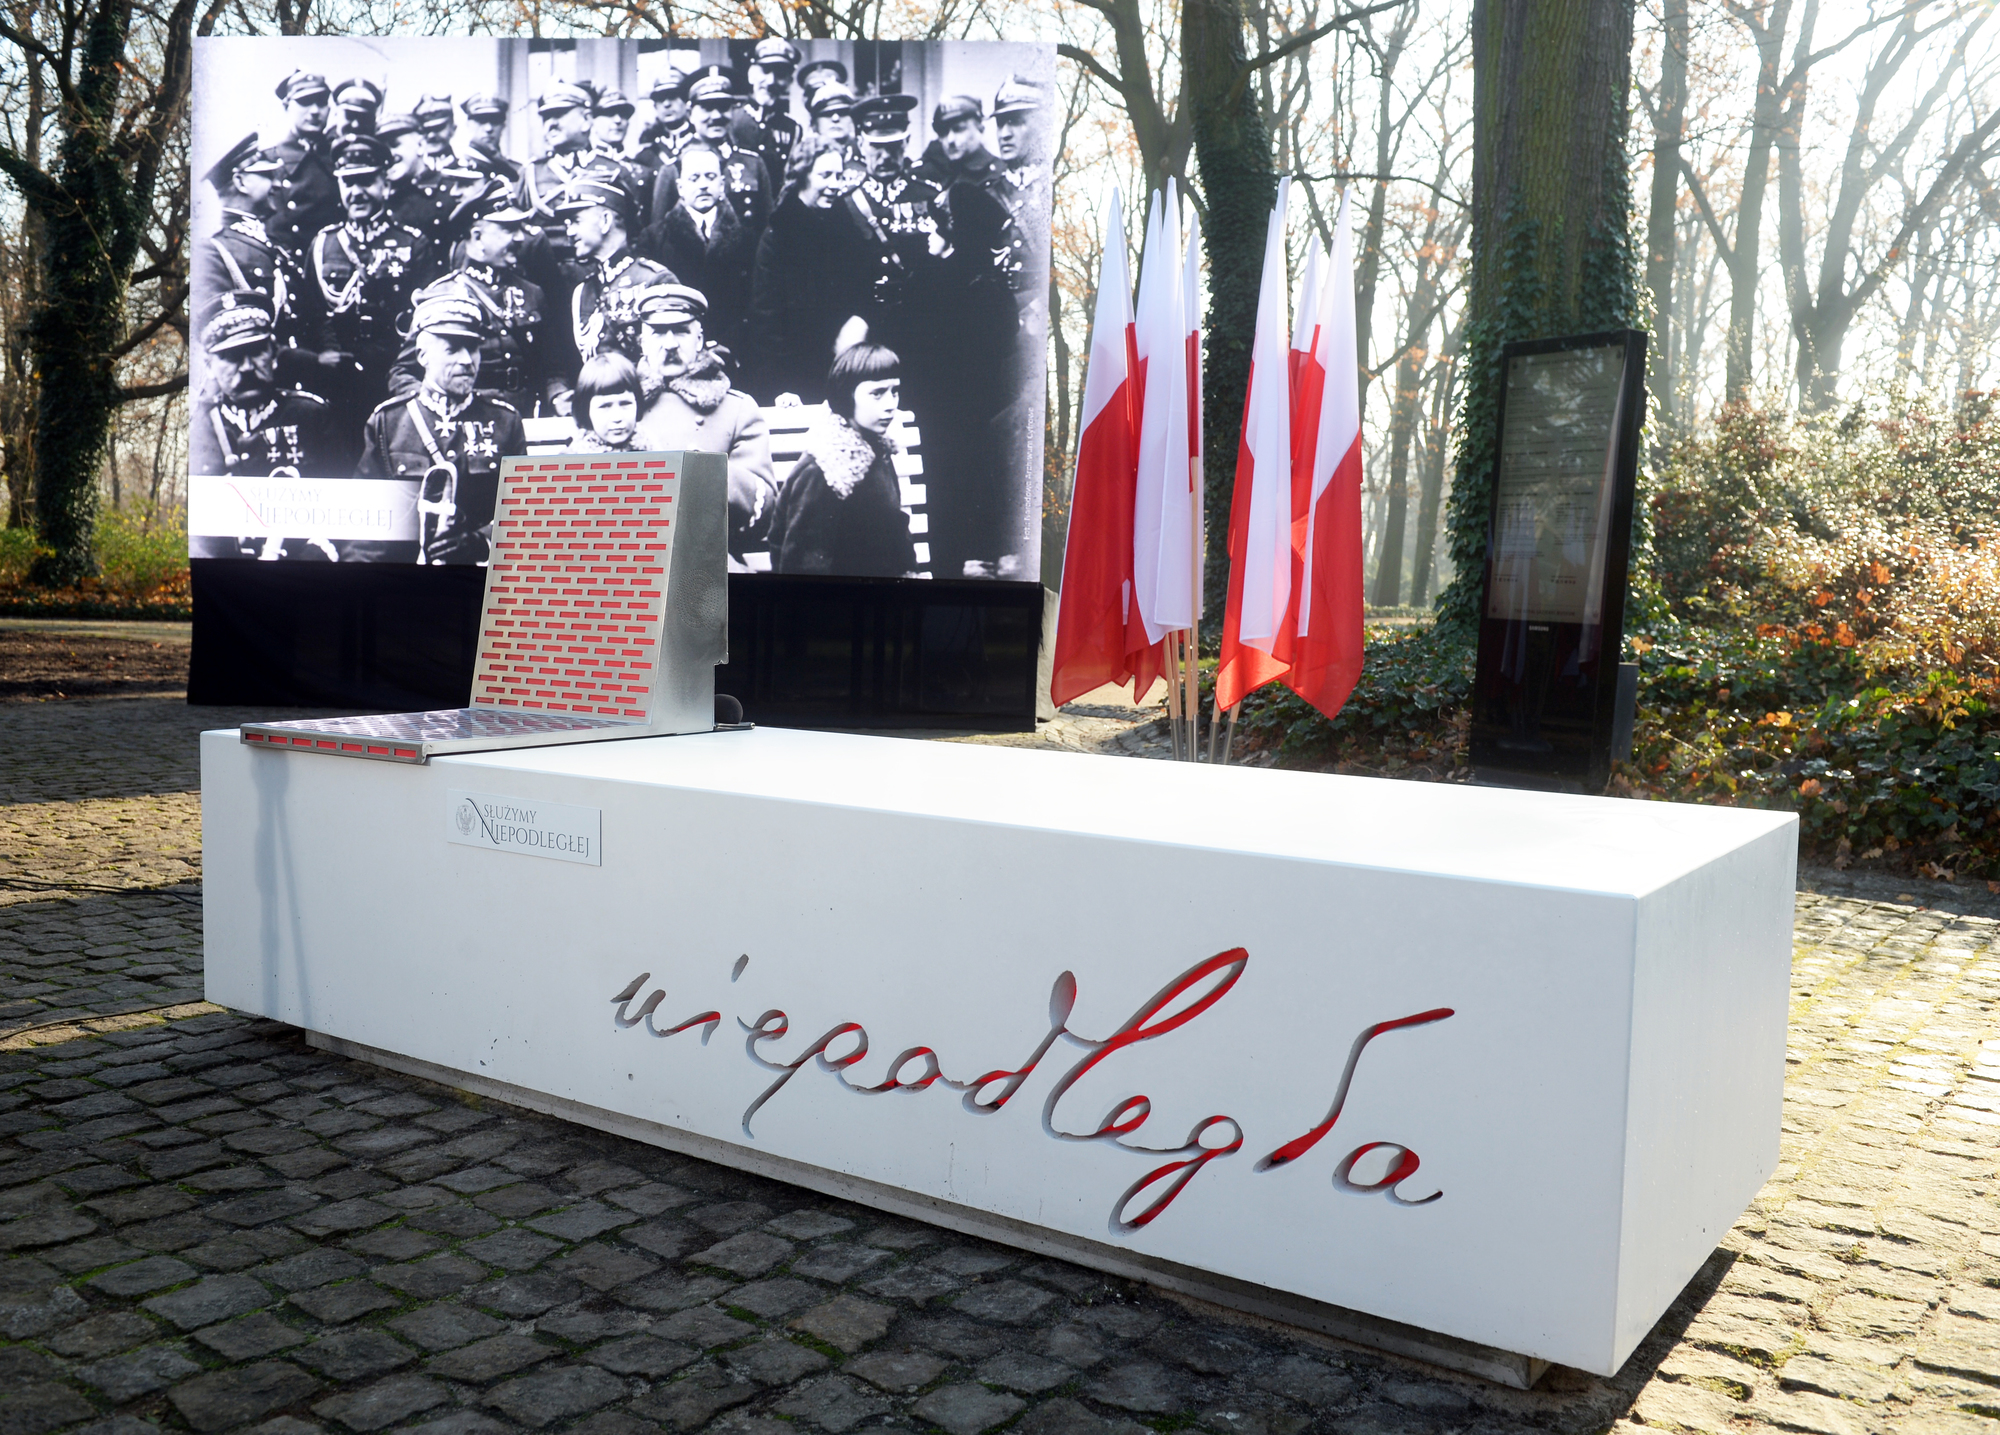 Ławki Niepodległości” na 100-lecie Polski projekt MON - Noizz